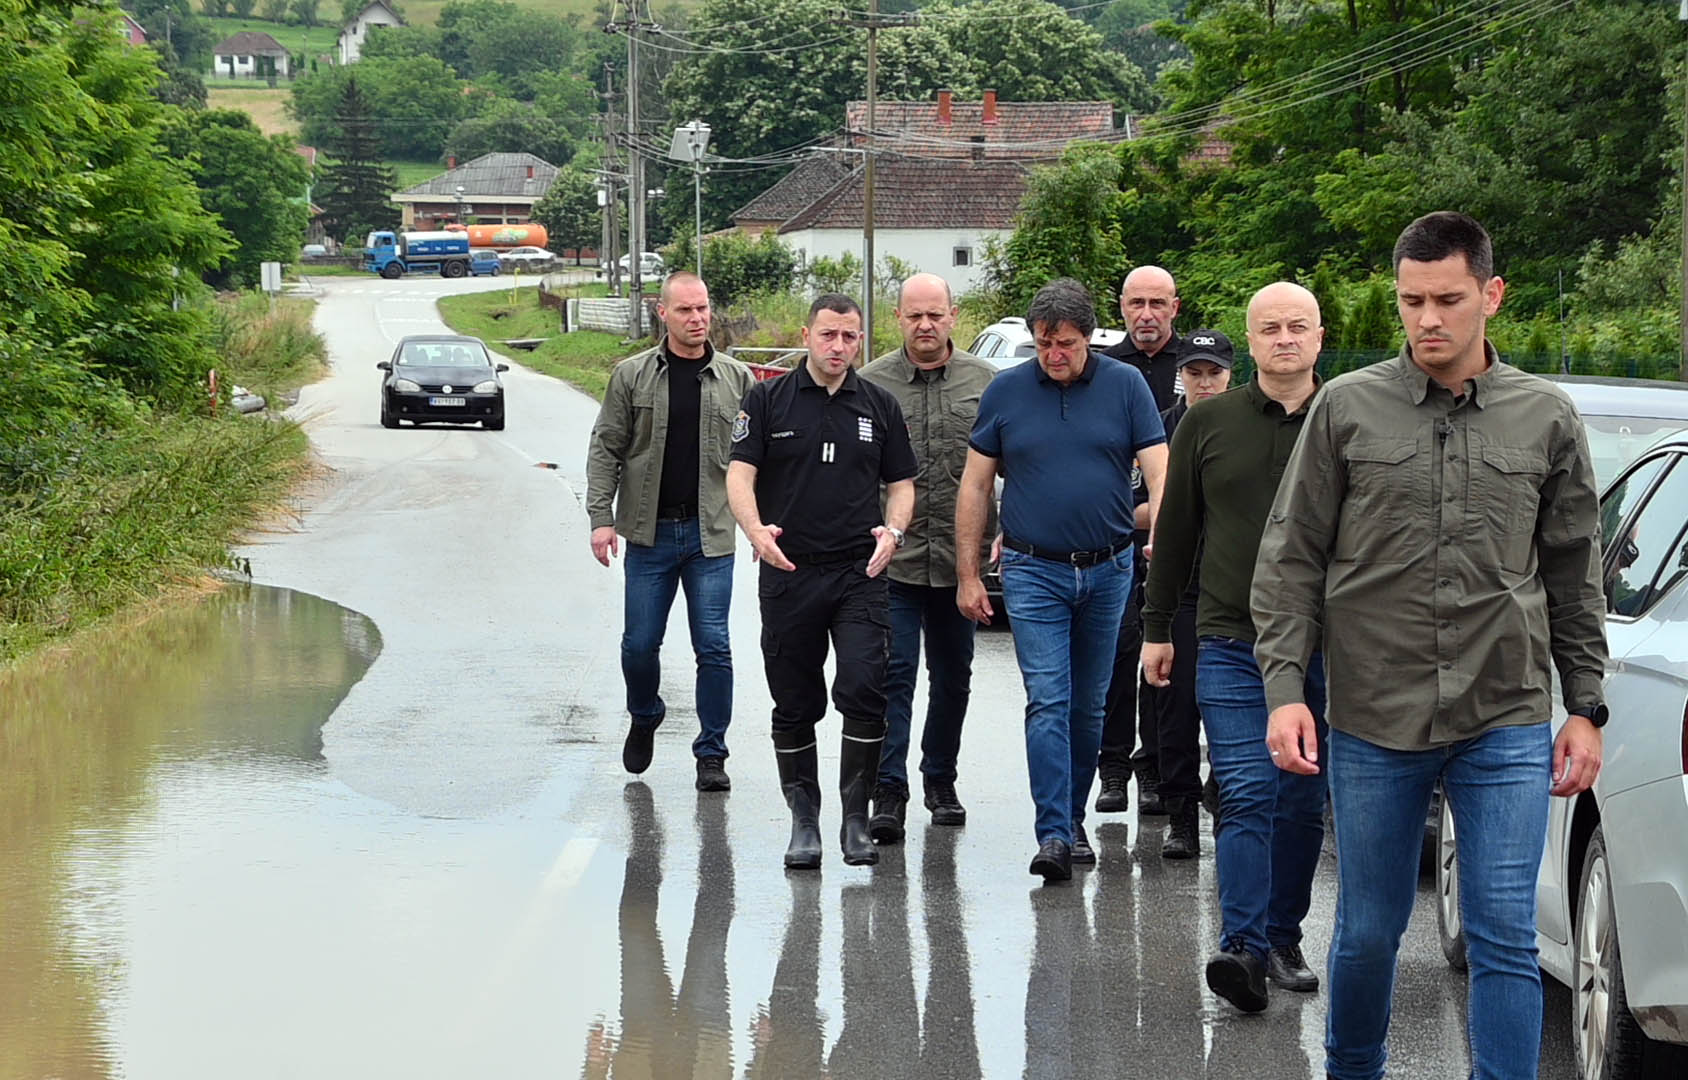 Ministar unutrašnjih poslova Bratislav Gašić obišao poplavlјeno mesto Junkovac u opštini Lazarevac